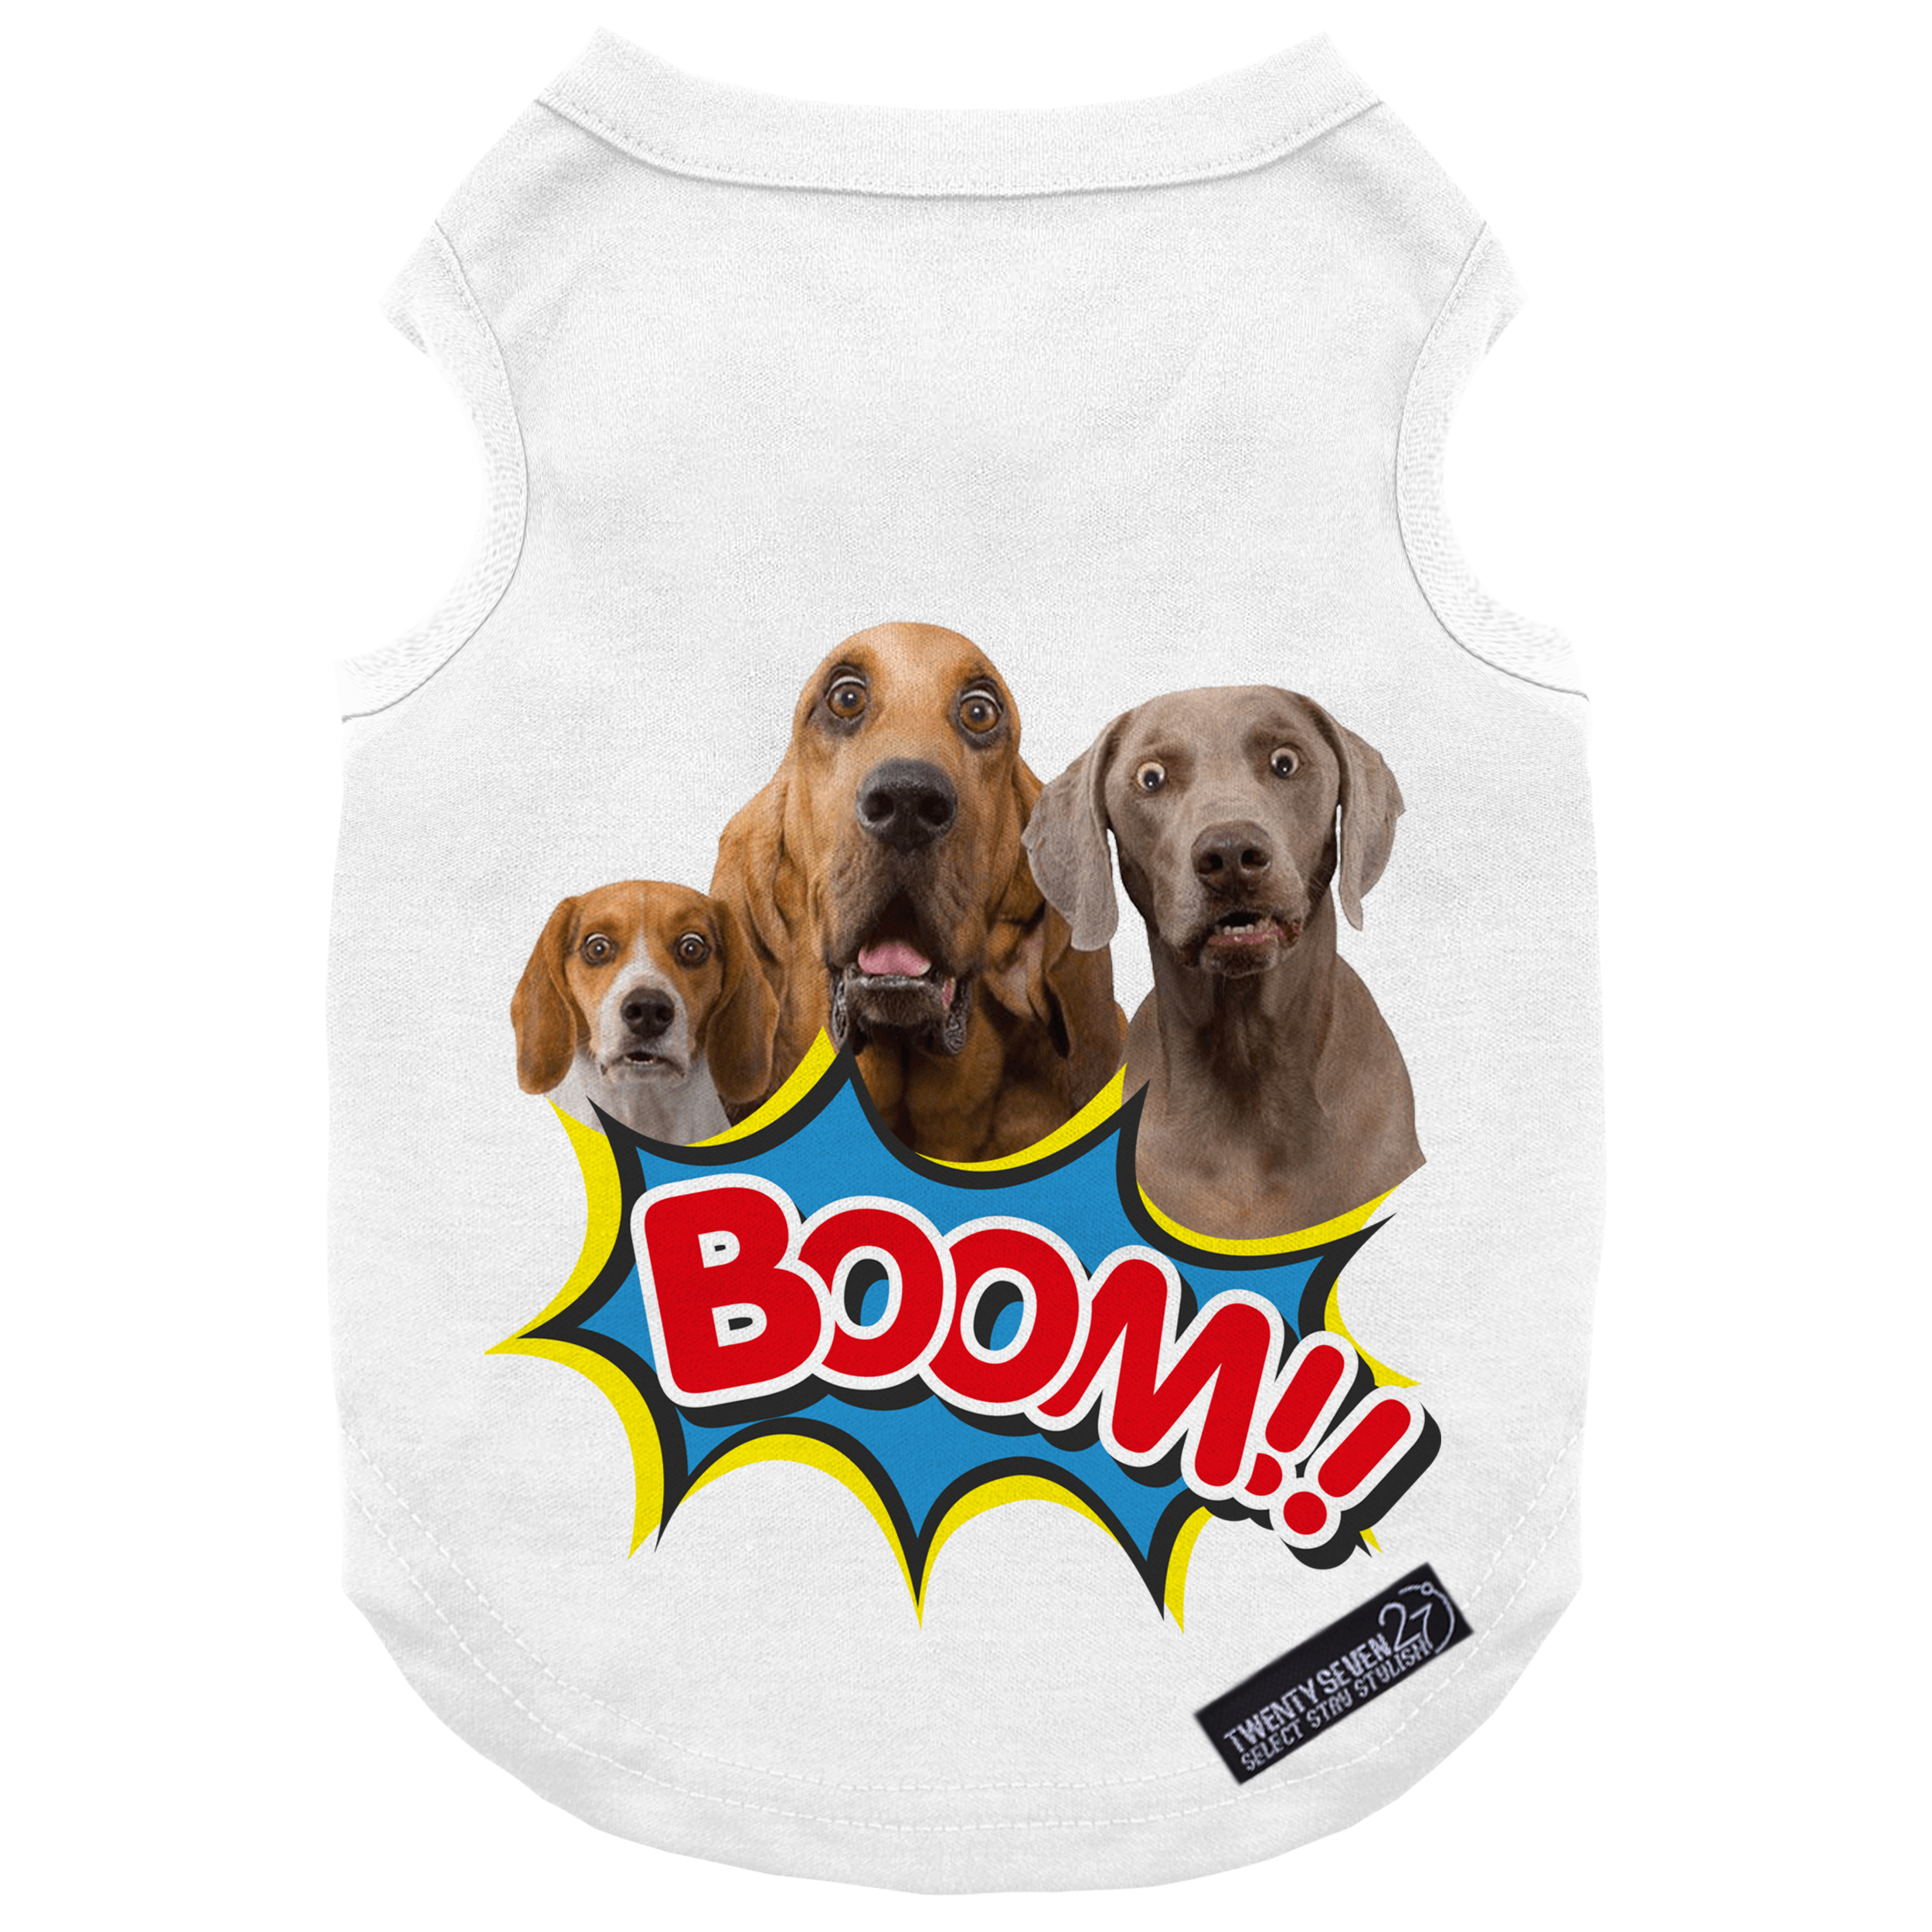 لباس سگ و گربه 27 طرح Boom Dogs کد MH929 سایز S